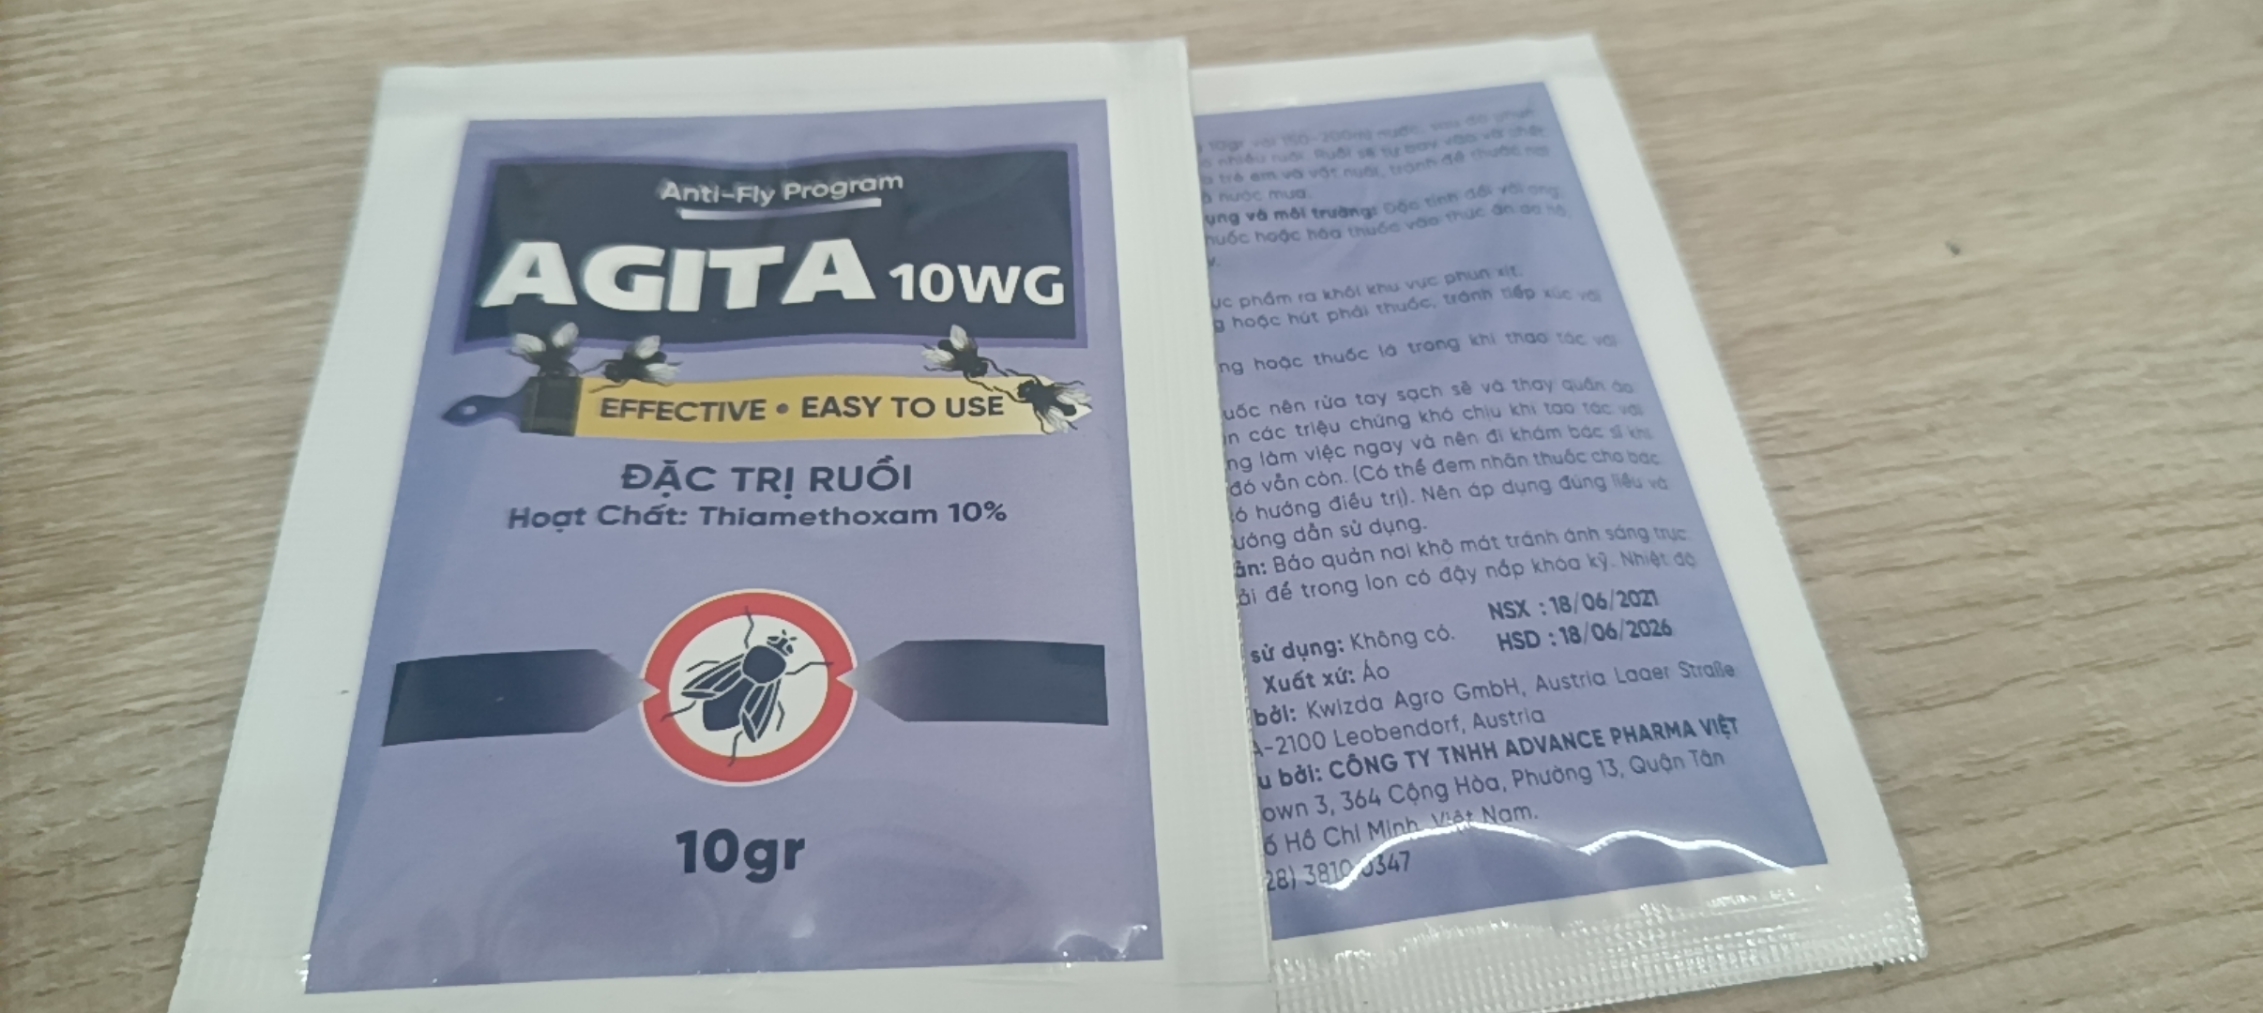 Thuốc Diệt Ruồi Agita 10WG - Gói 10g - Diệt Ruồi Hiệu Quả - Hàng Nhập Khẩu